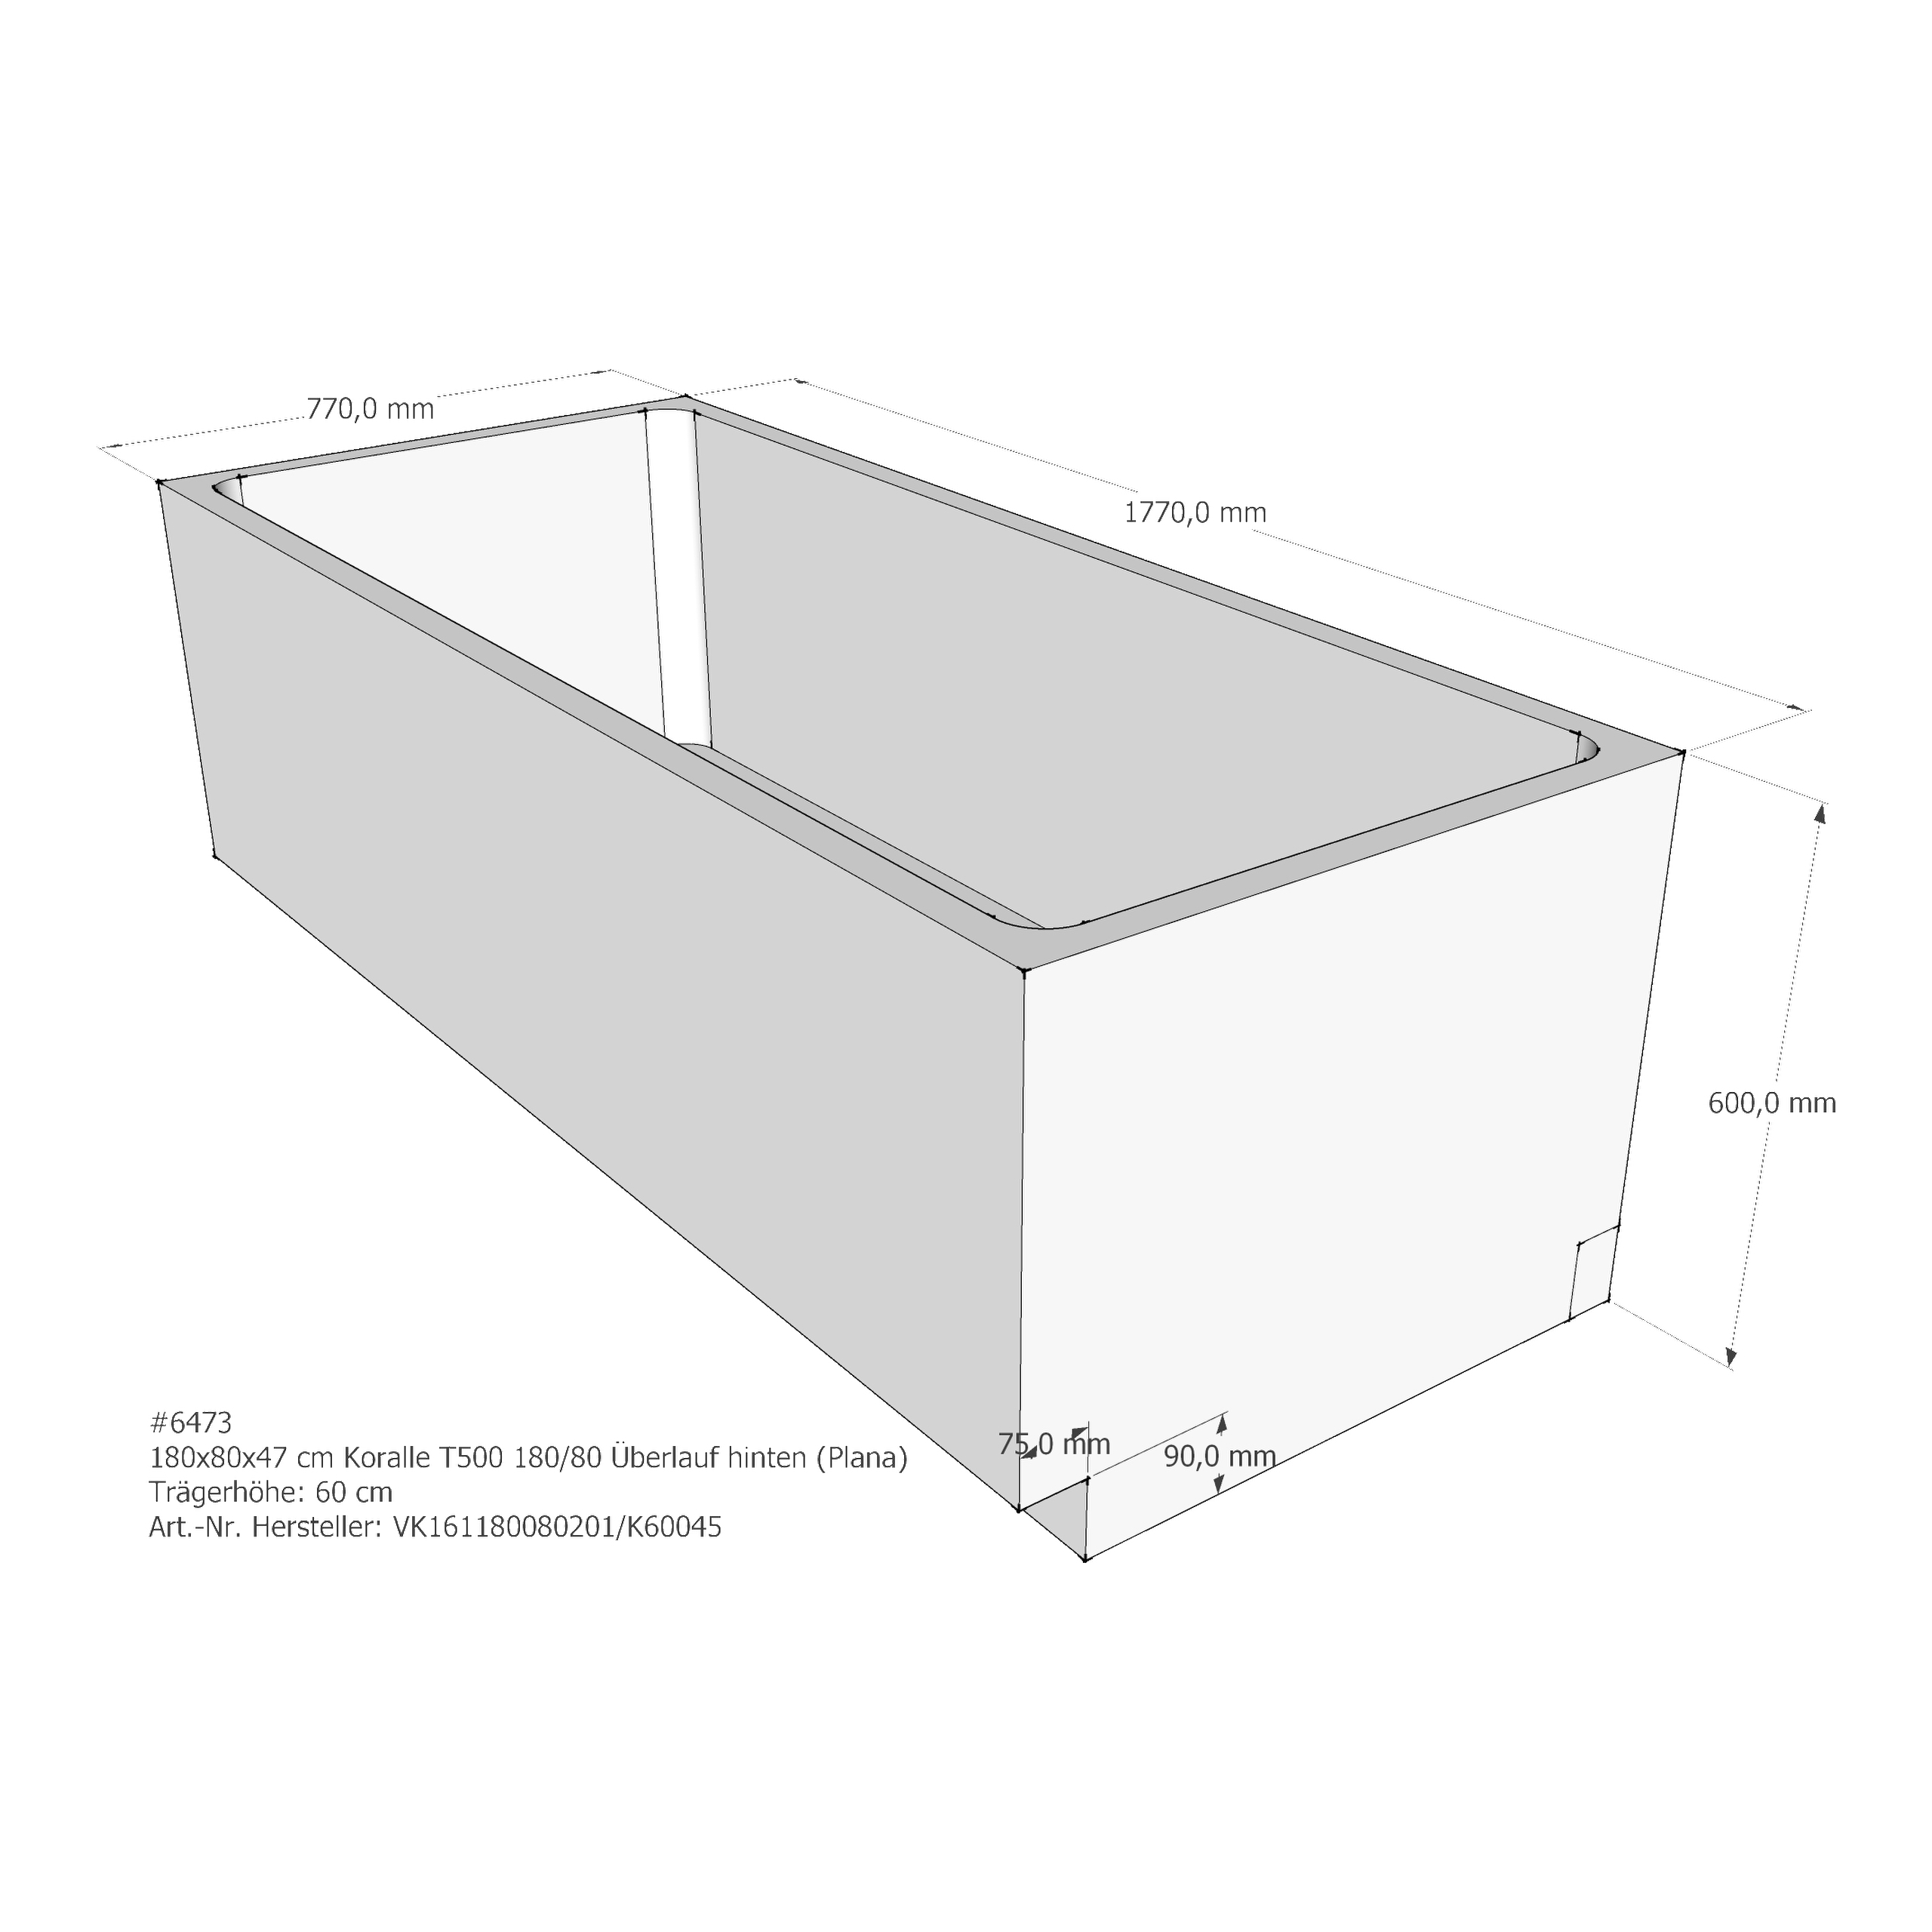 Badewannenträger für Koralle T500 BW 180/80 (Plana) 180 × 80 × 47 cm